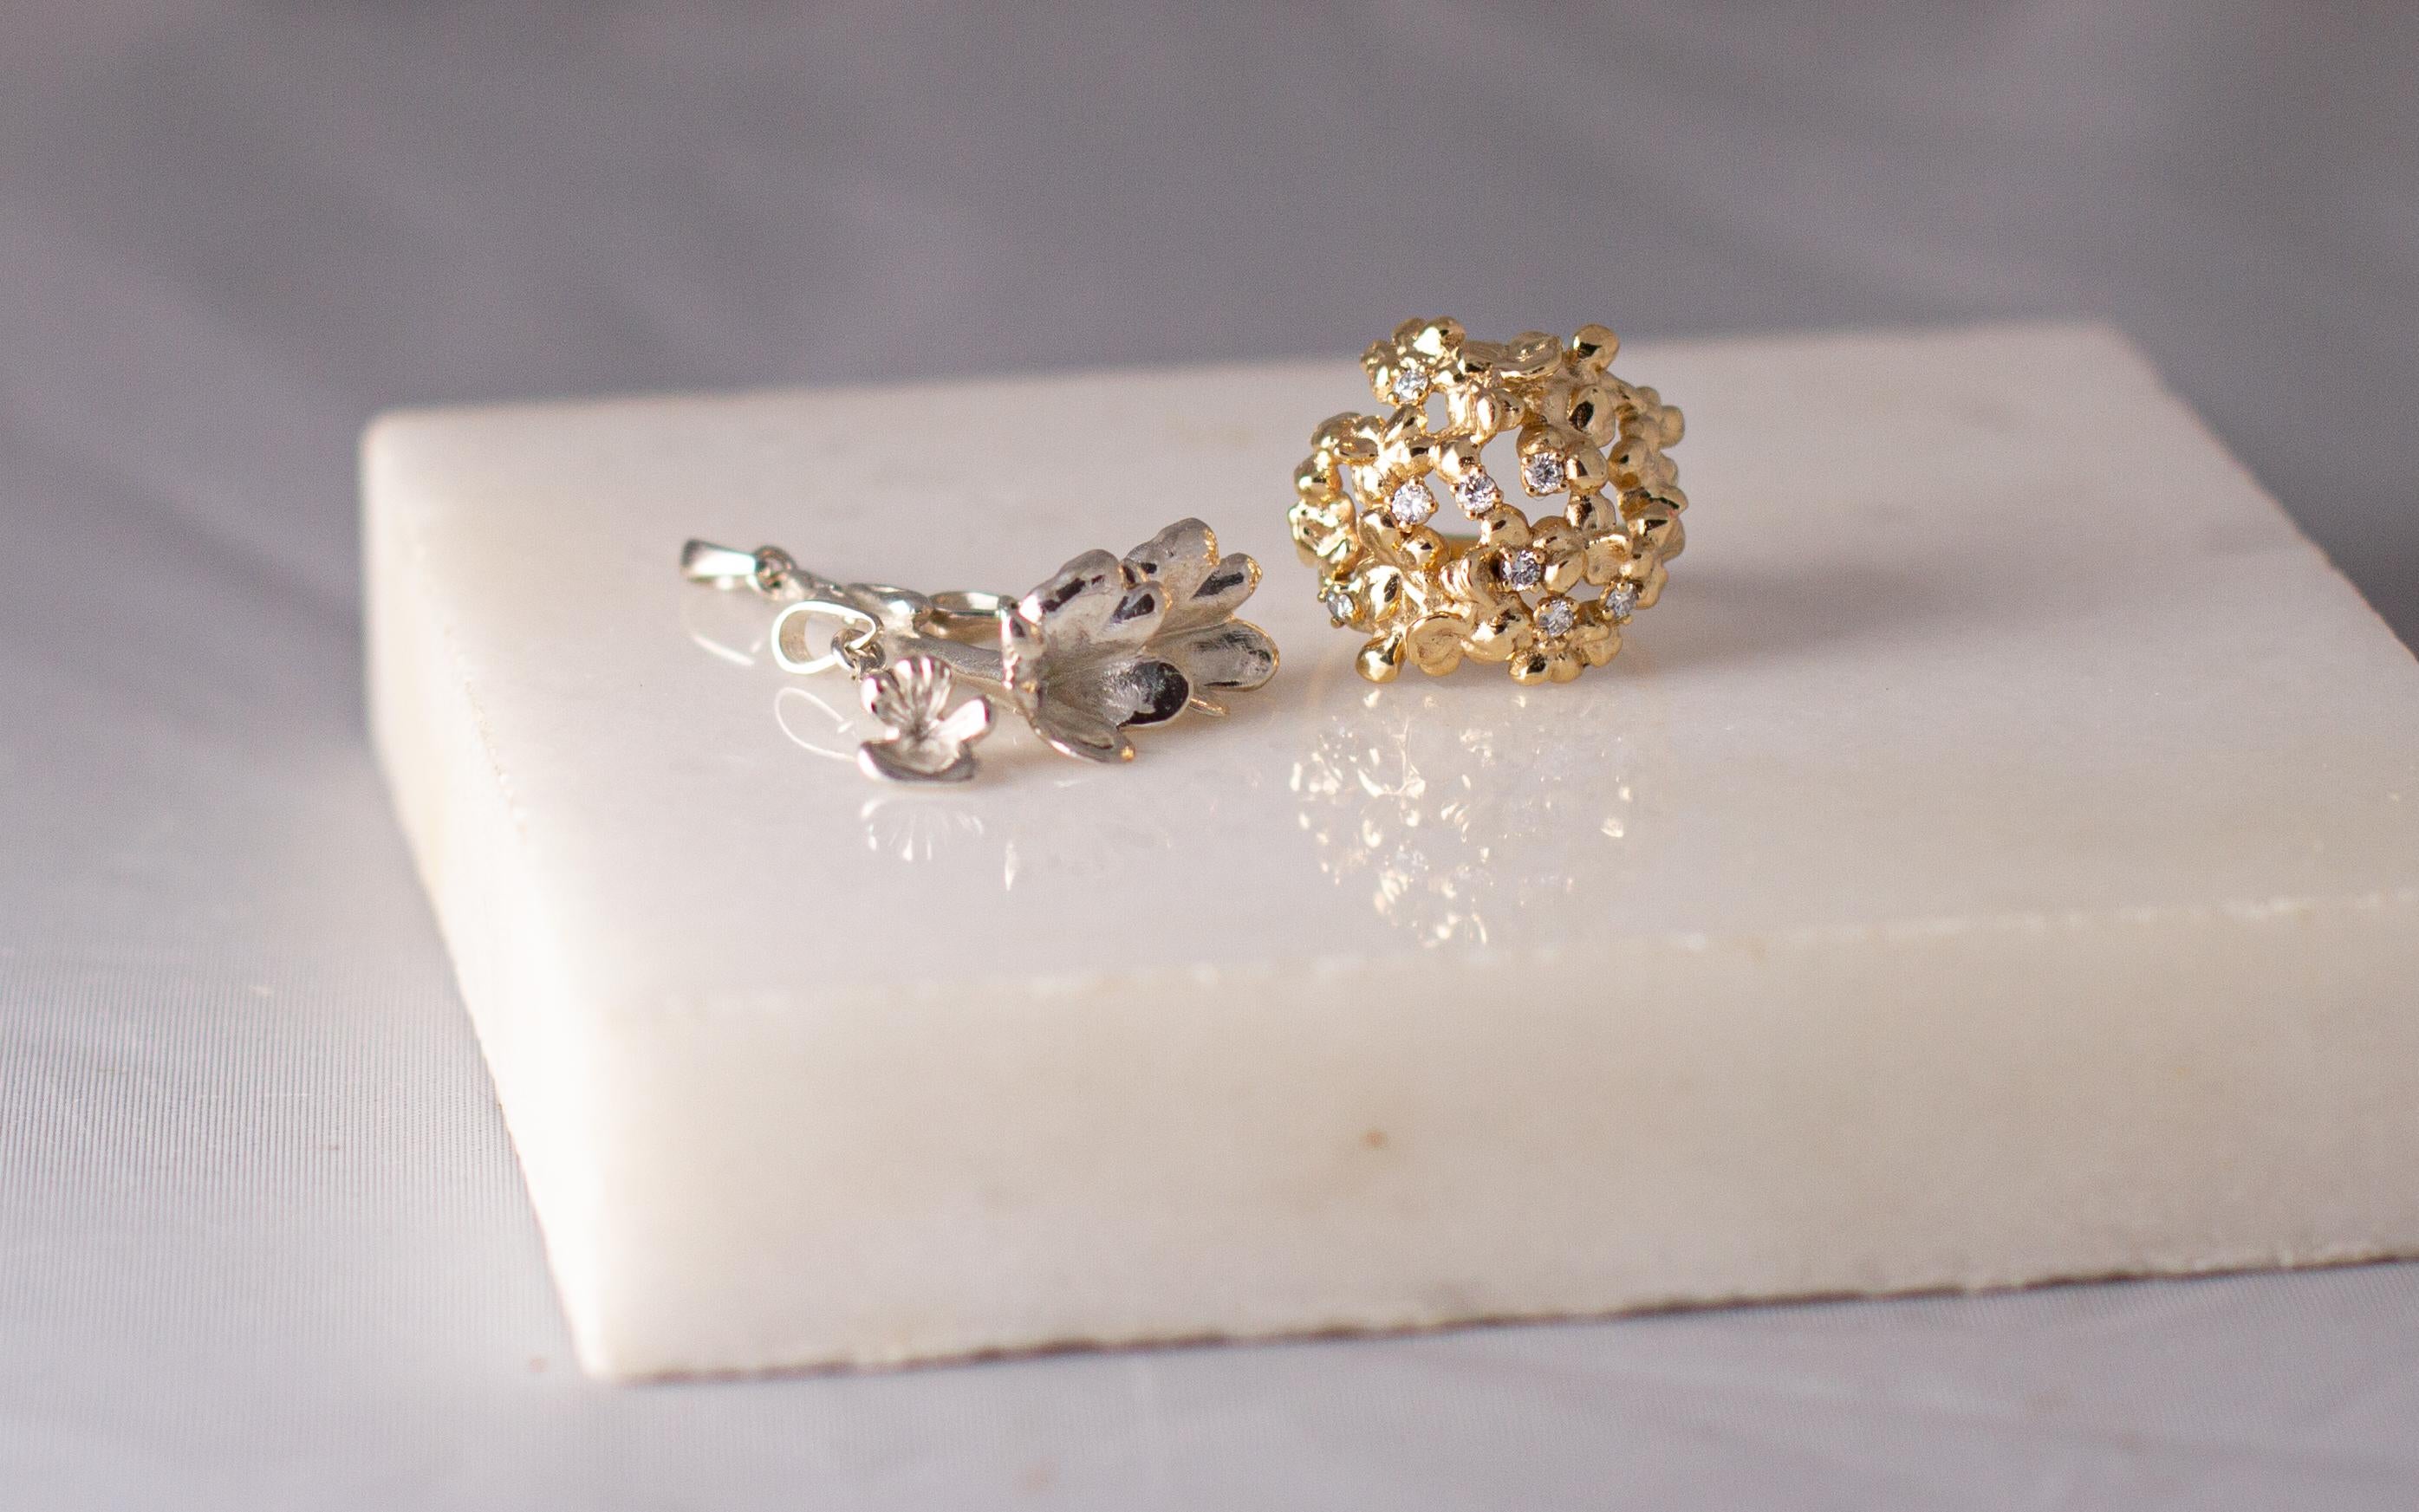 Le pendentif en or blanc 18 carats, Bindweed, appartient à la collection de bijoux Blossom conçue par l'artiste peintre Polya Medvedeva, basée à Berlin. La collection a été présentée dans Vogue et Harper's Bazaar UA, et ce pendentif est une pièce en